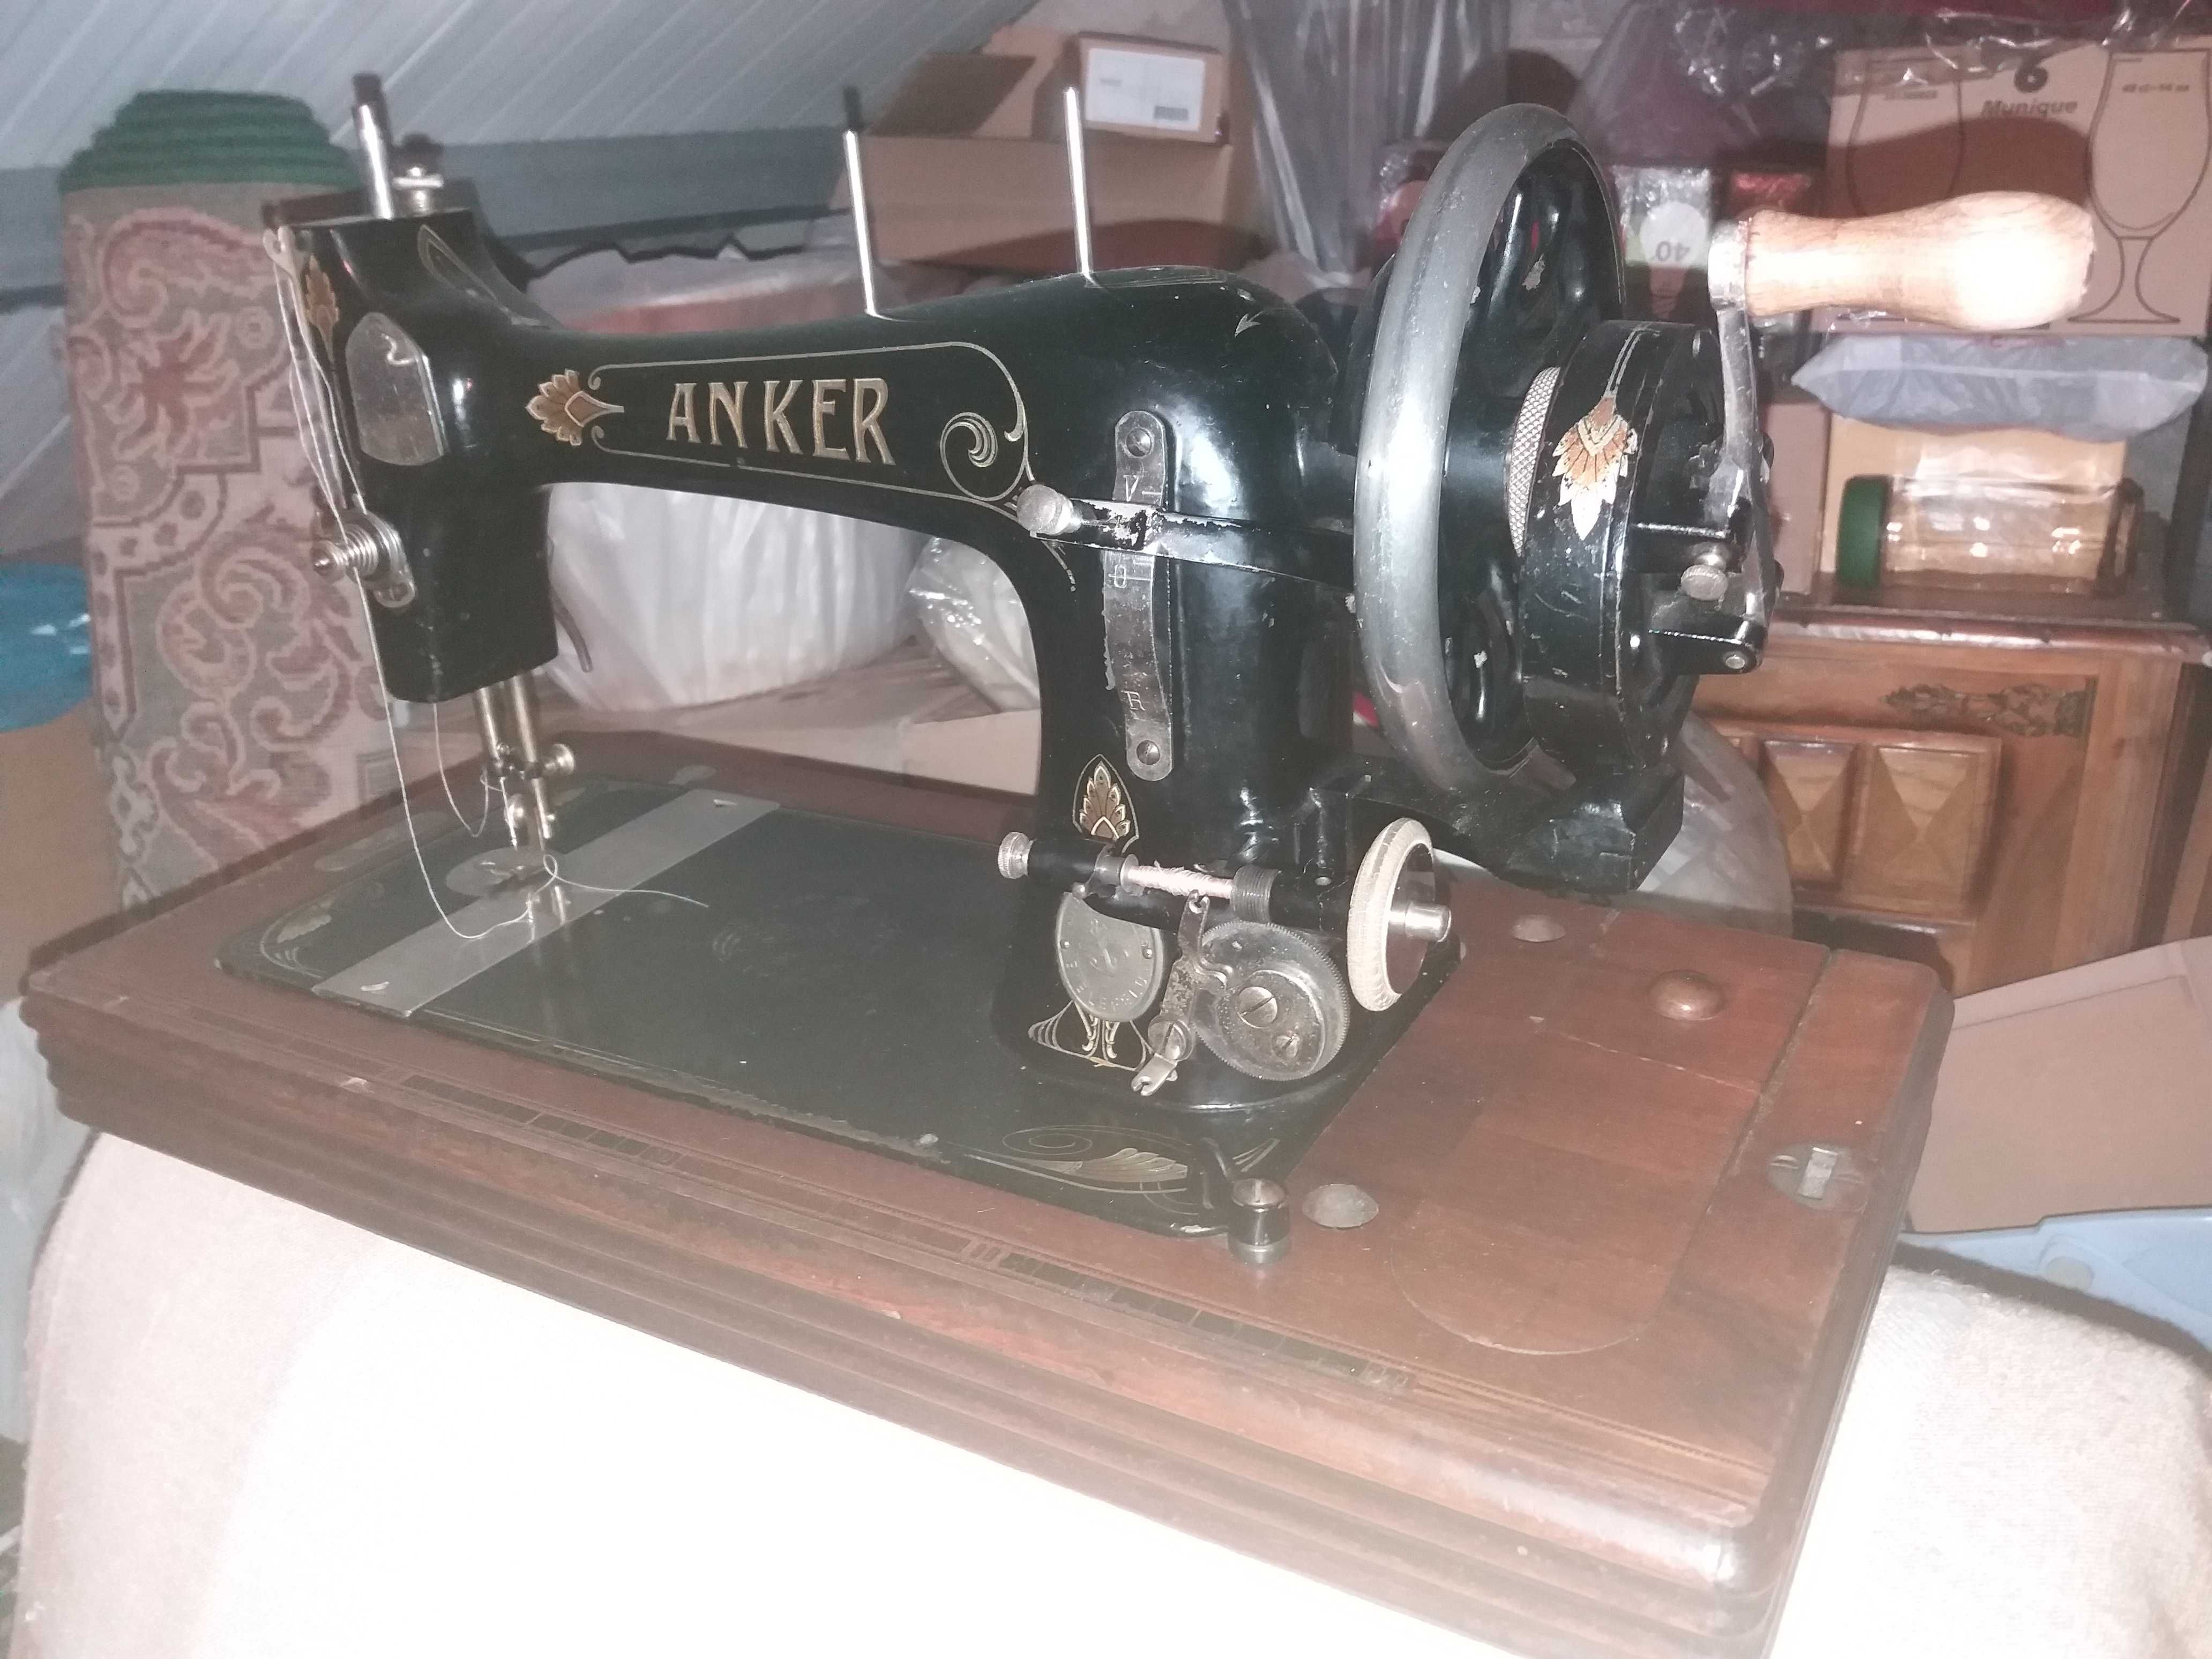 Máquina costura antiga de manivela 
 Anker